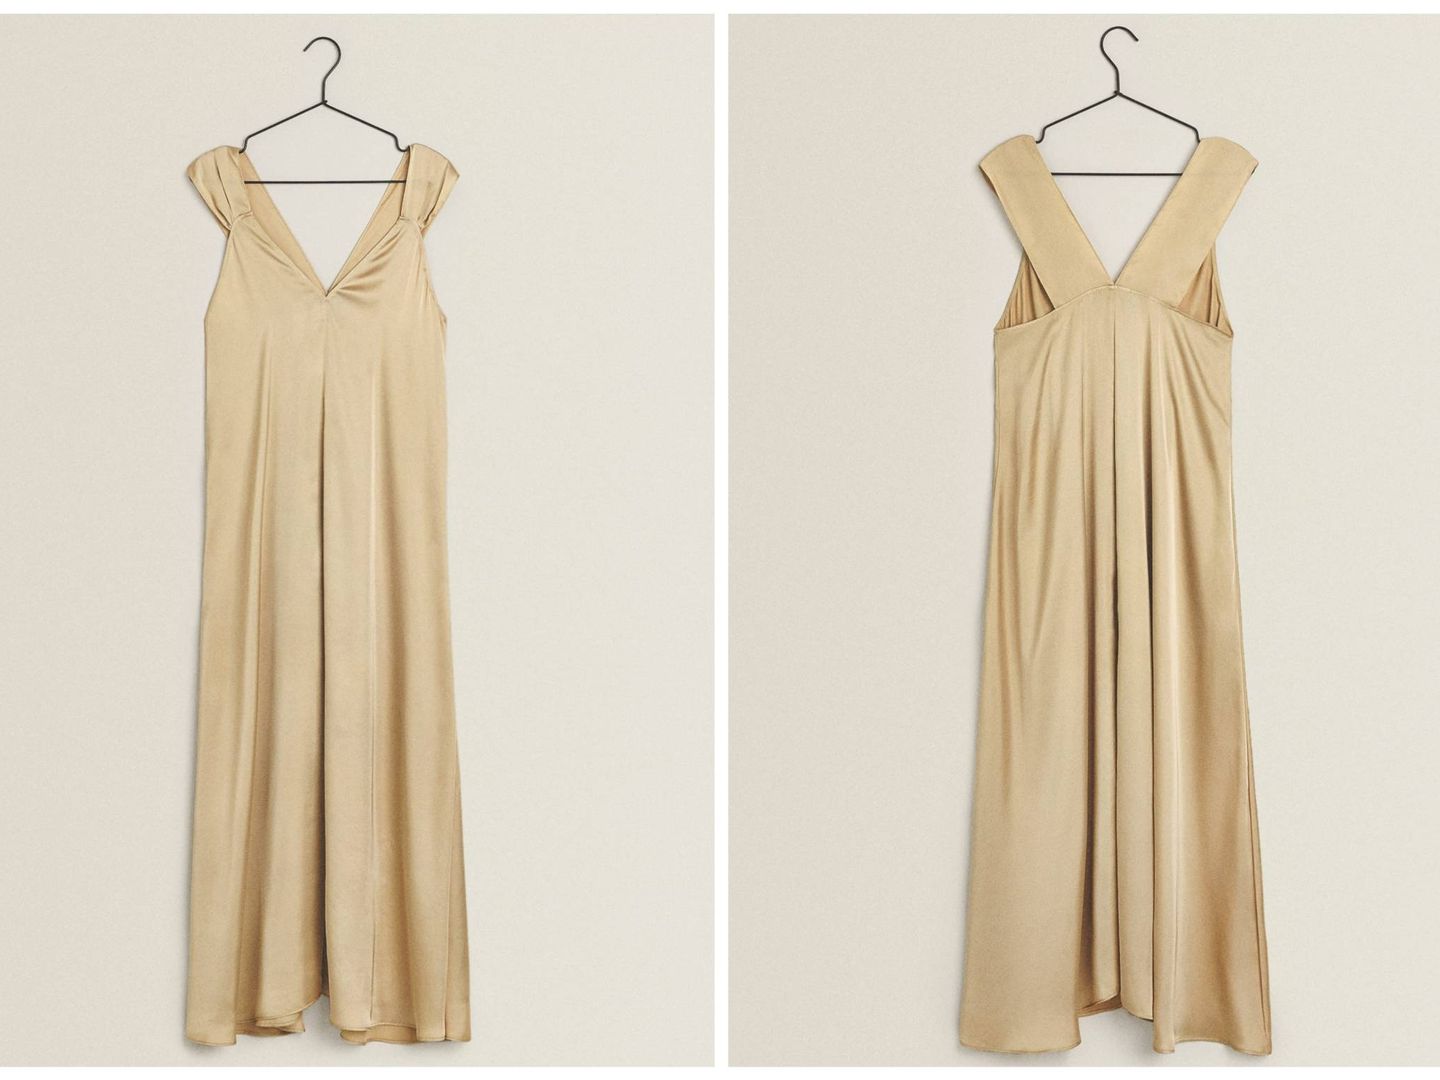 El vestido de Zara Home que queremos ver en una boda. (Cortesía)